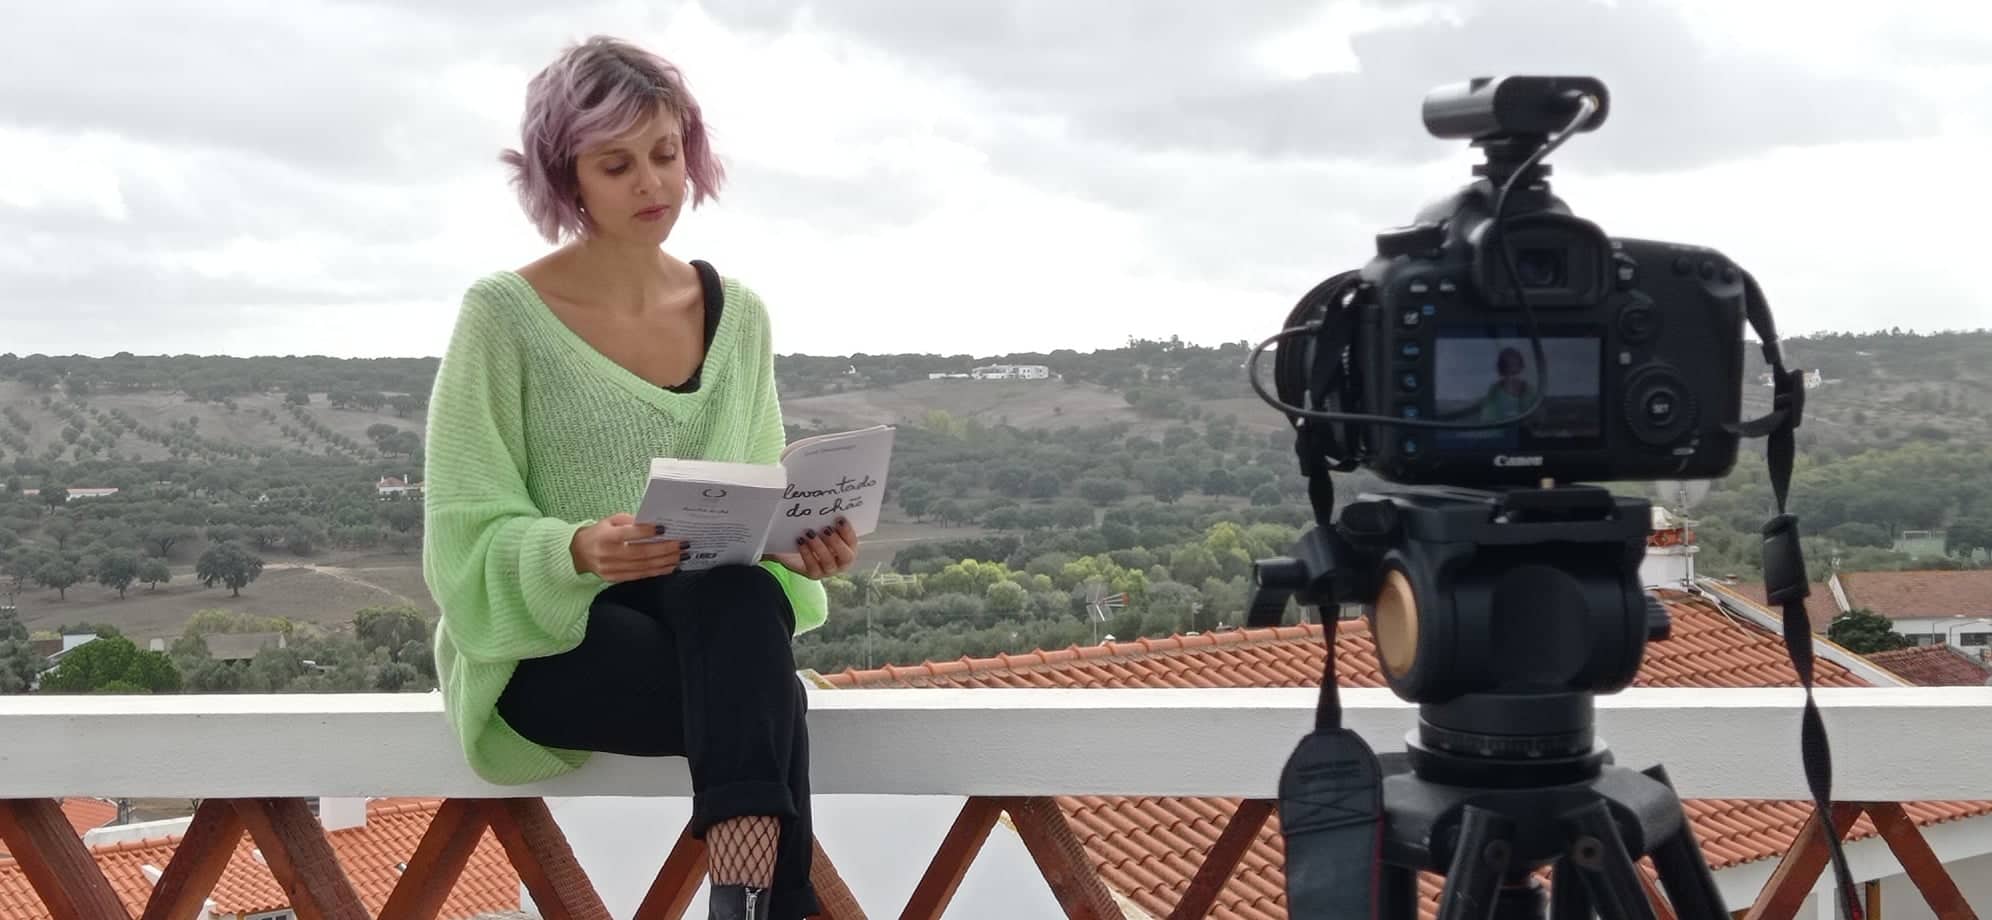 Helena Caldeira, Roteiro Literário Levantado do Chão, Montemor-o-Novo